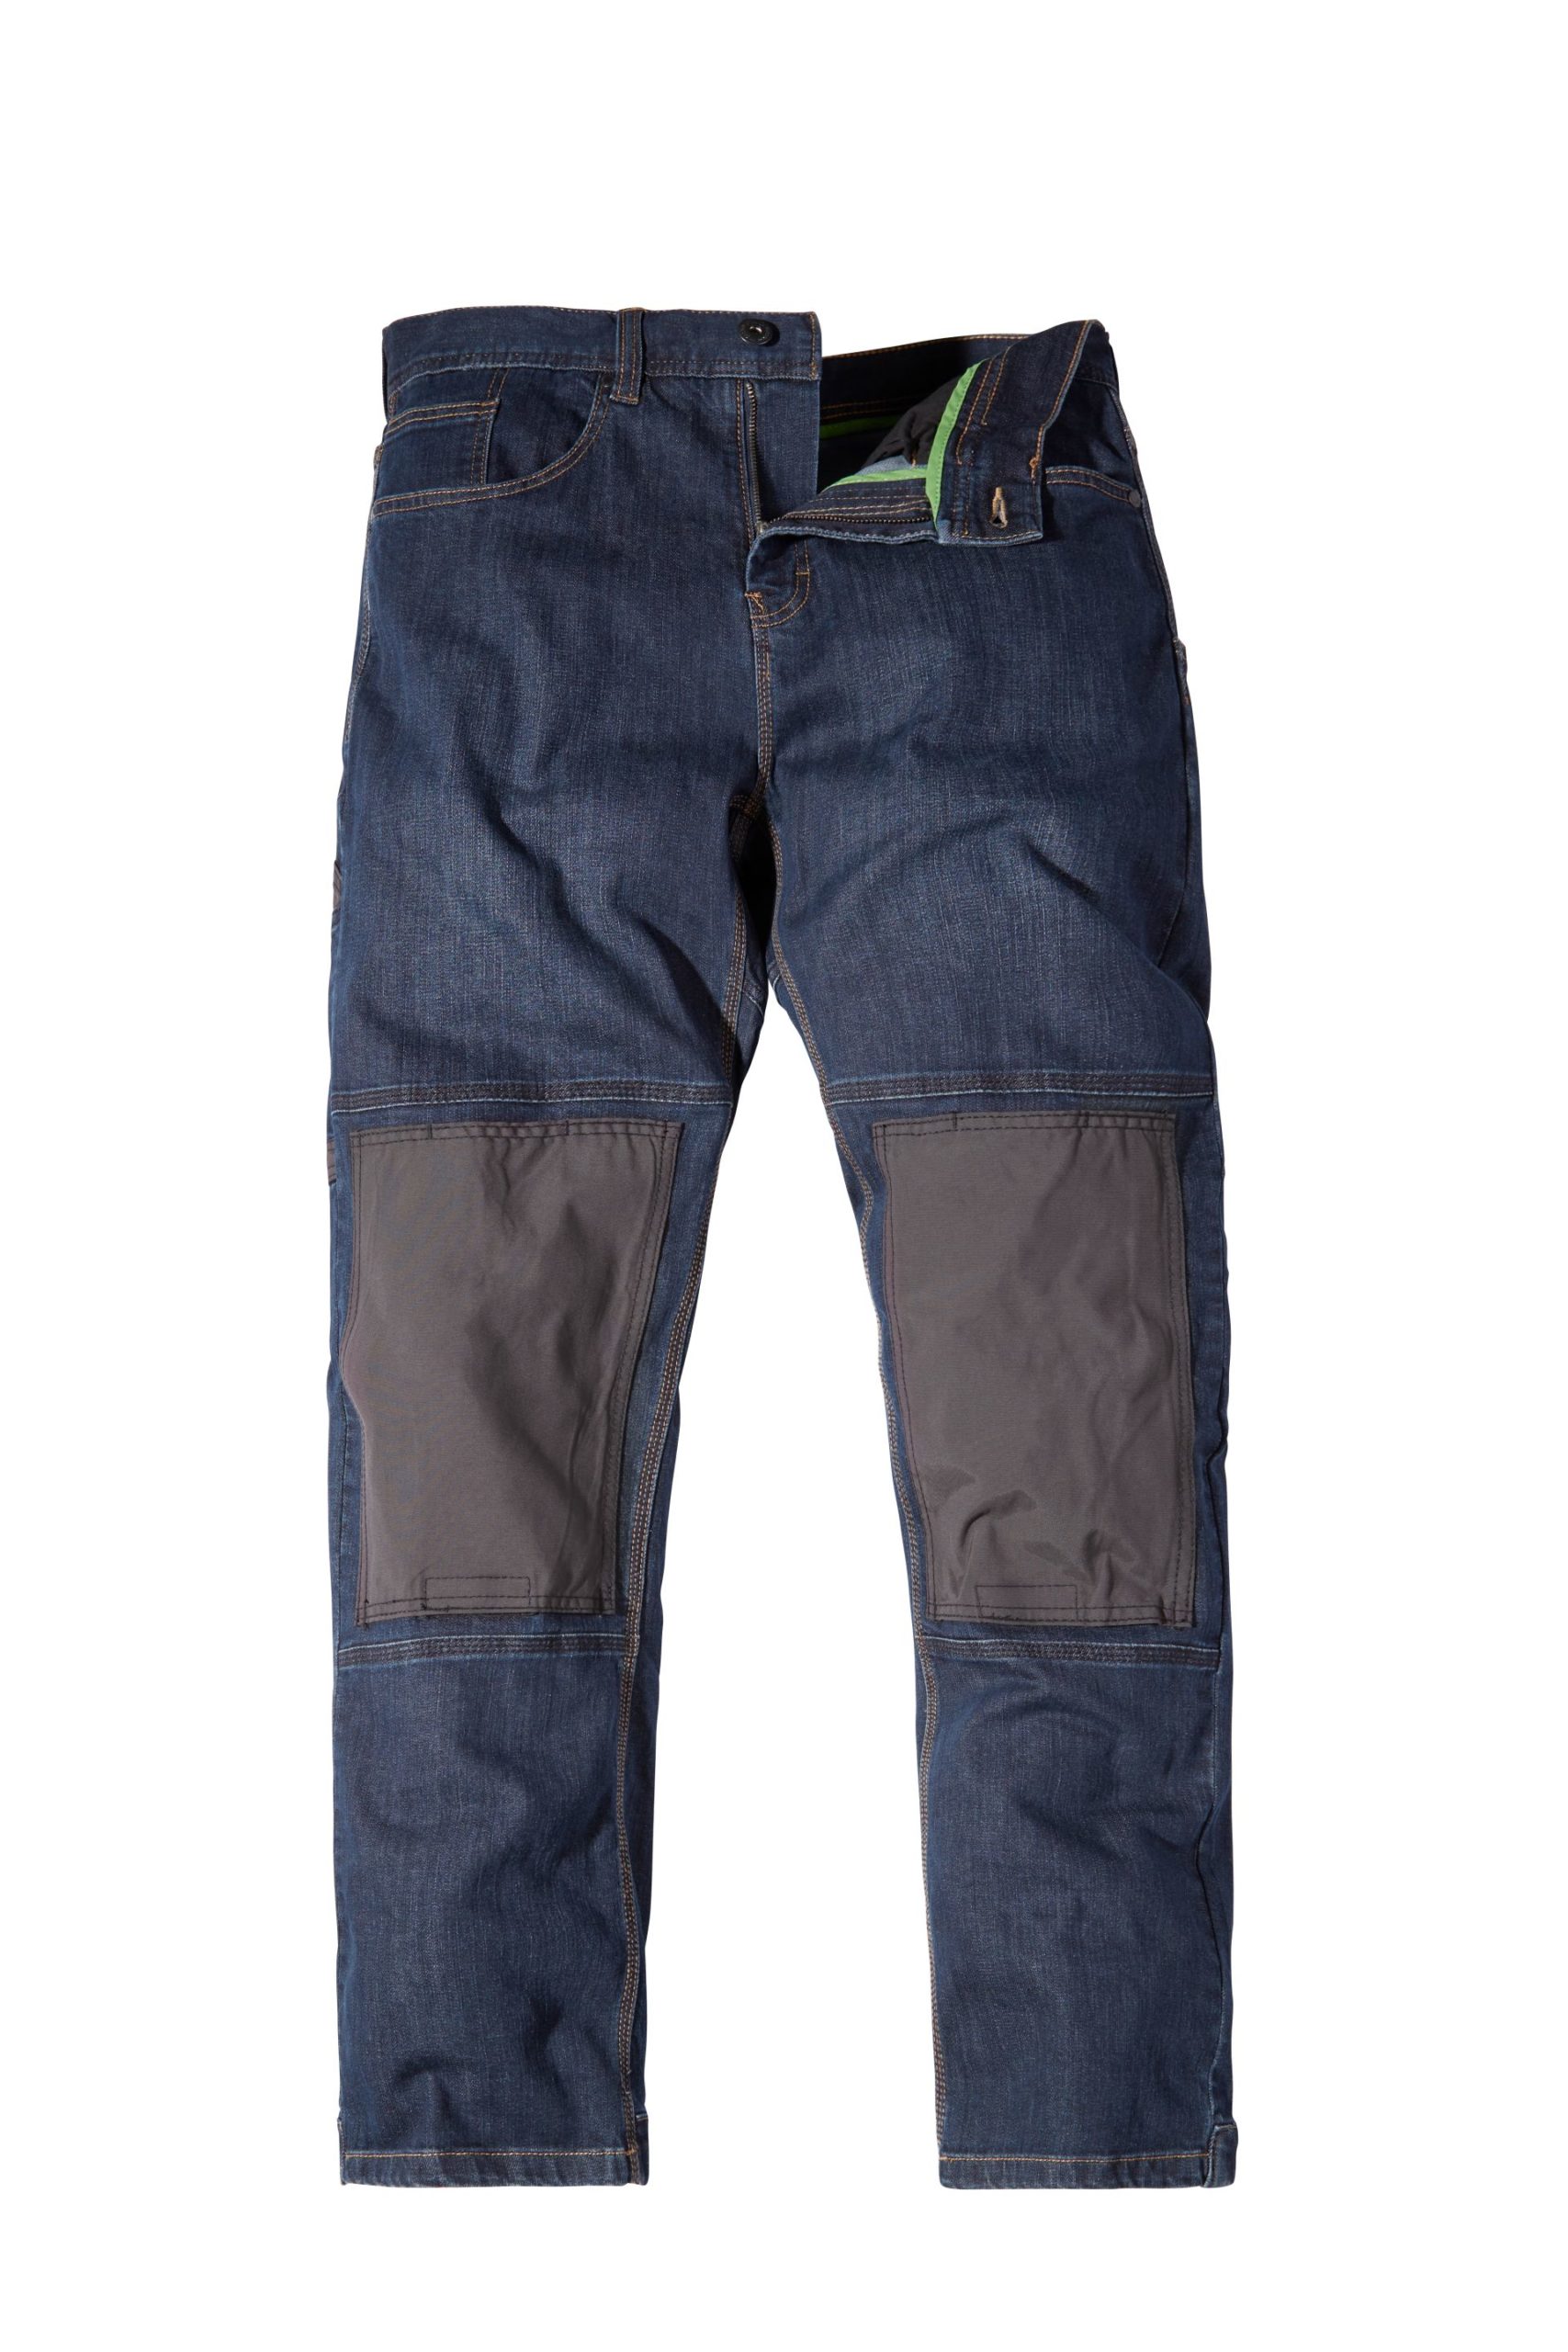 WD 1 Denim Jeans with Knee Pads - NextSite